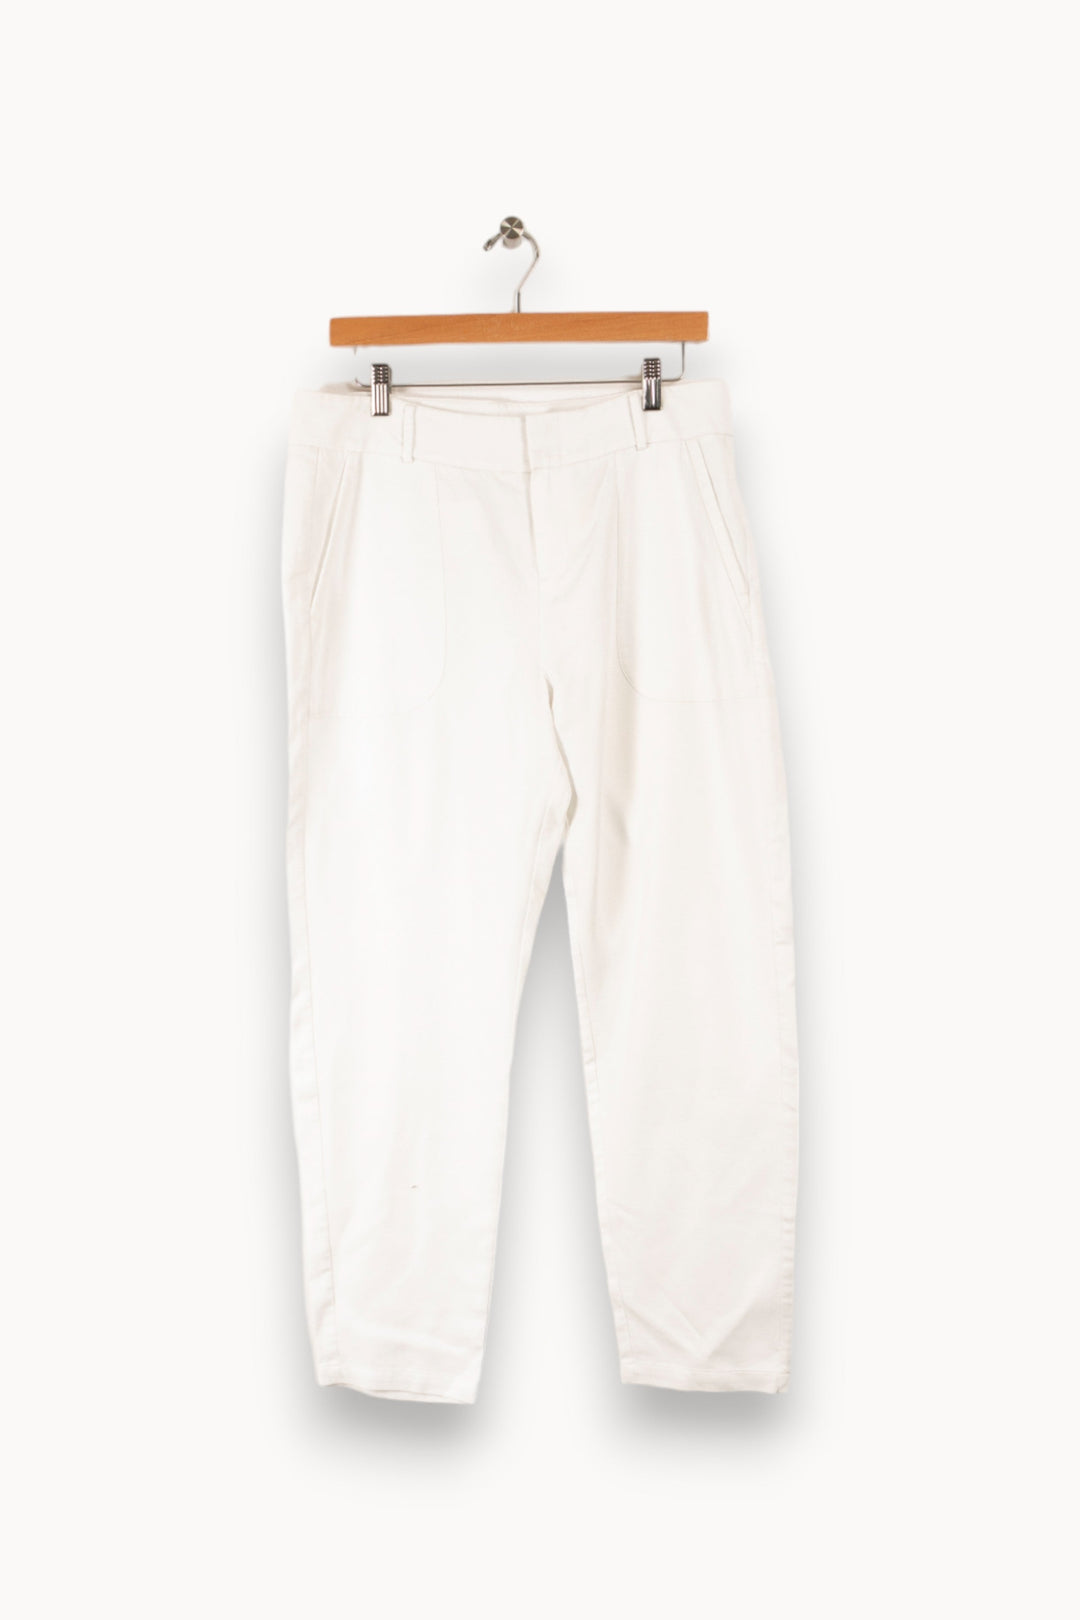 Pantalon blanc - Taille M/38